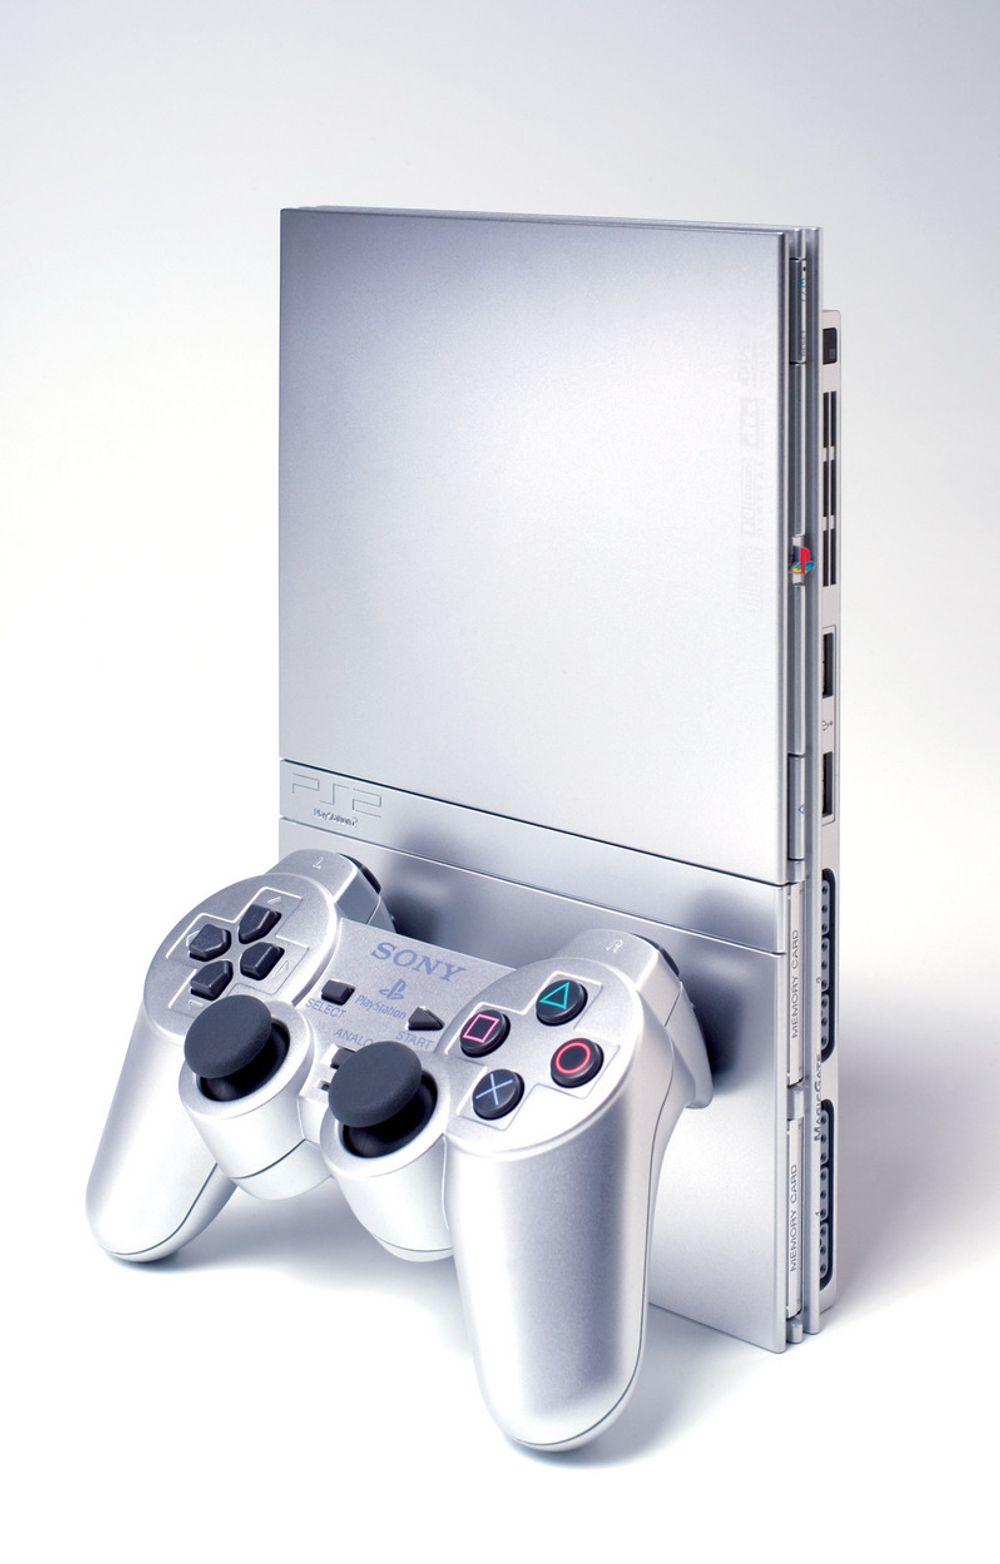 Sony lanserer en ny, lettere versjon av Playstation 2. Maskinen kommer til Europa over nyttår.